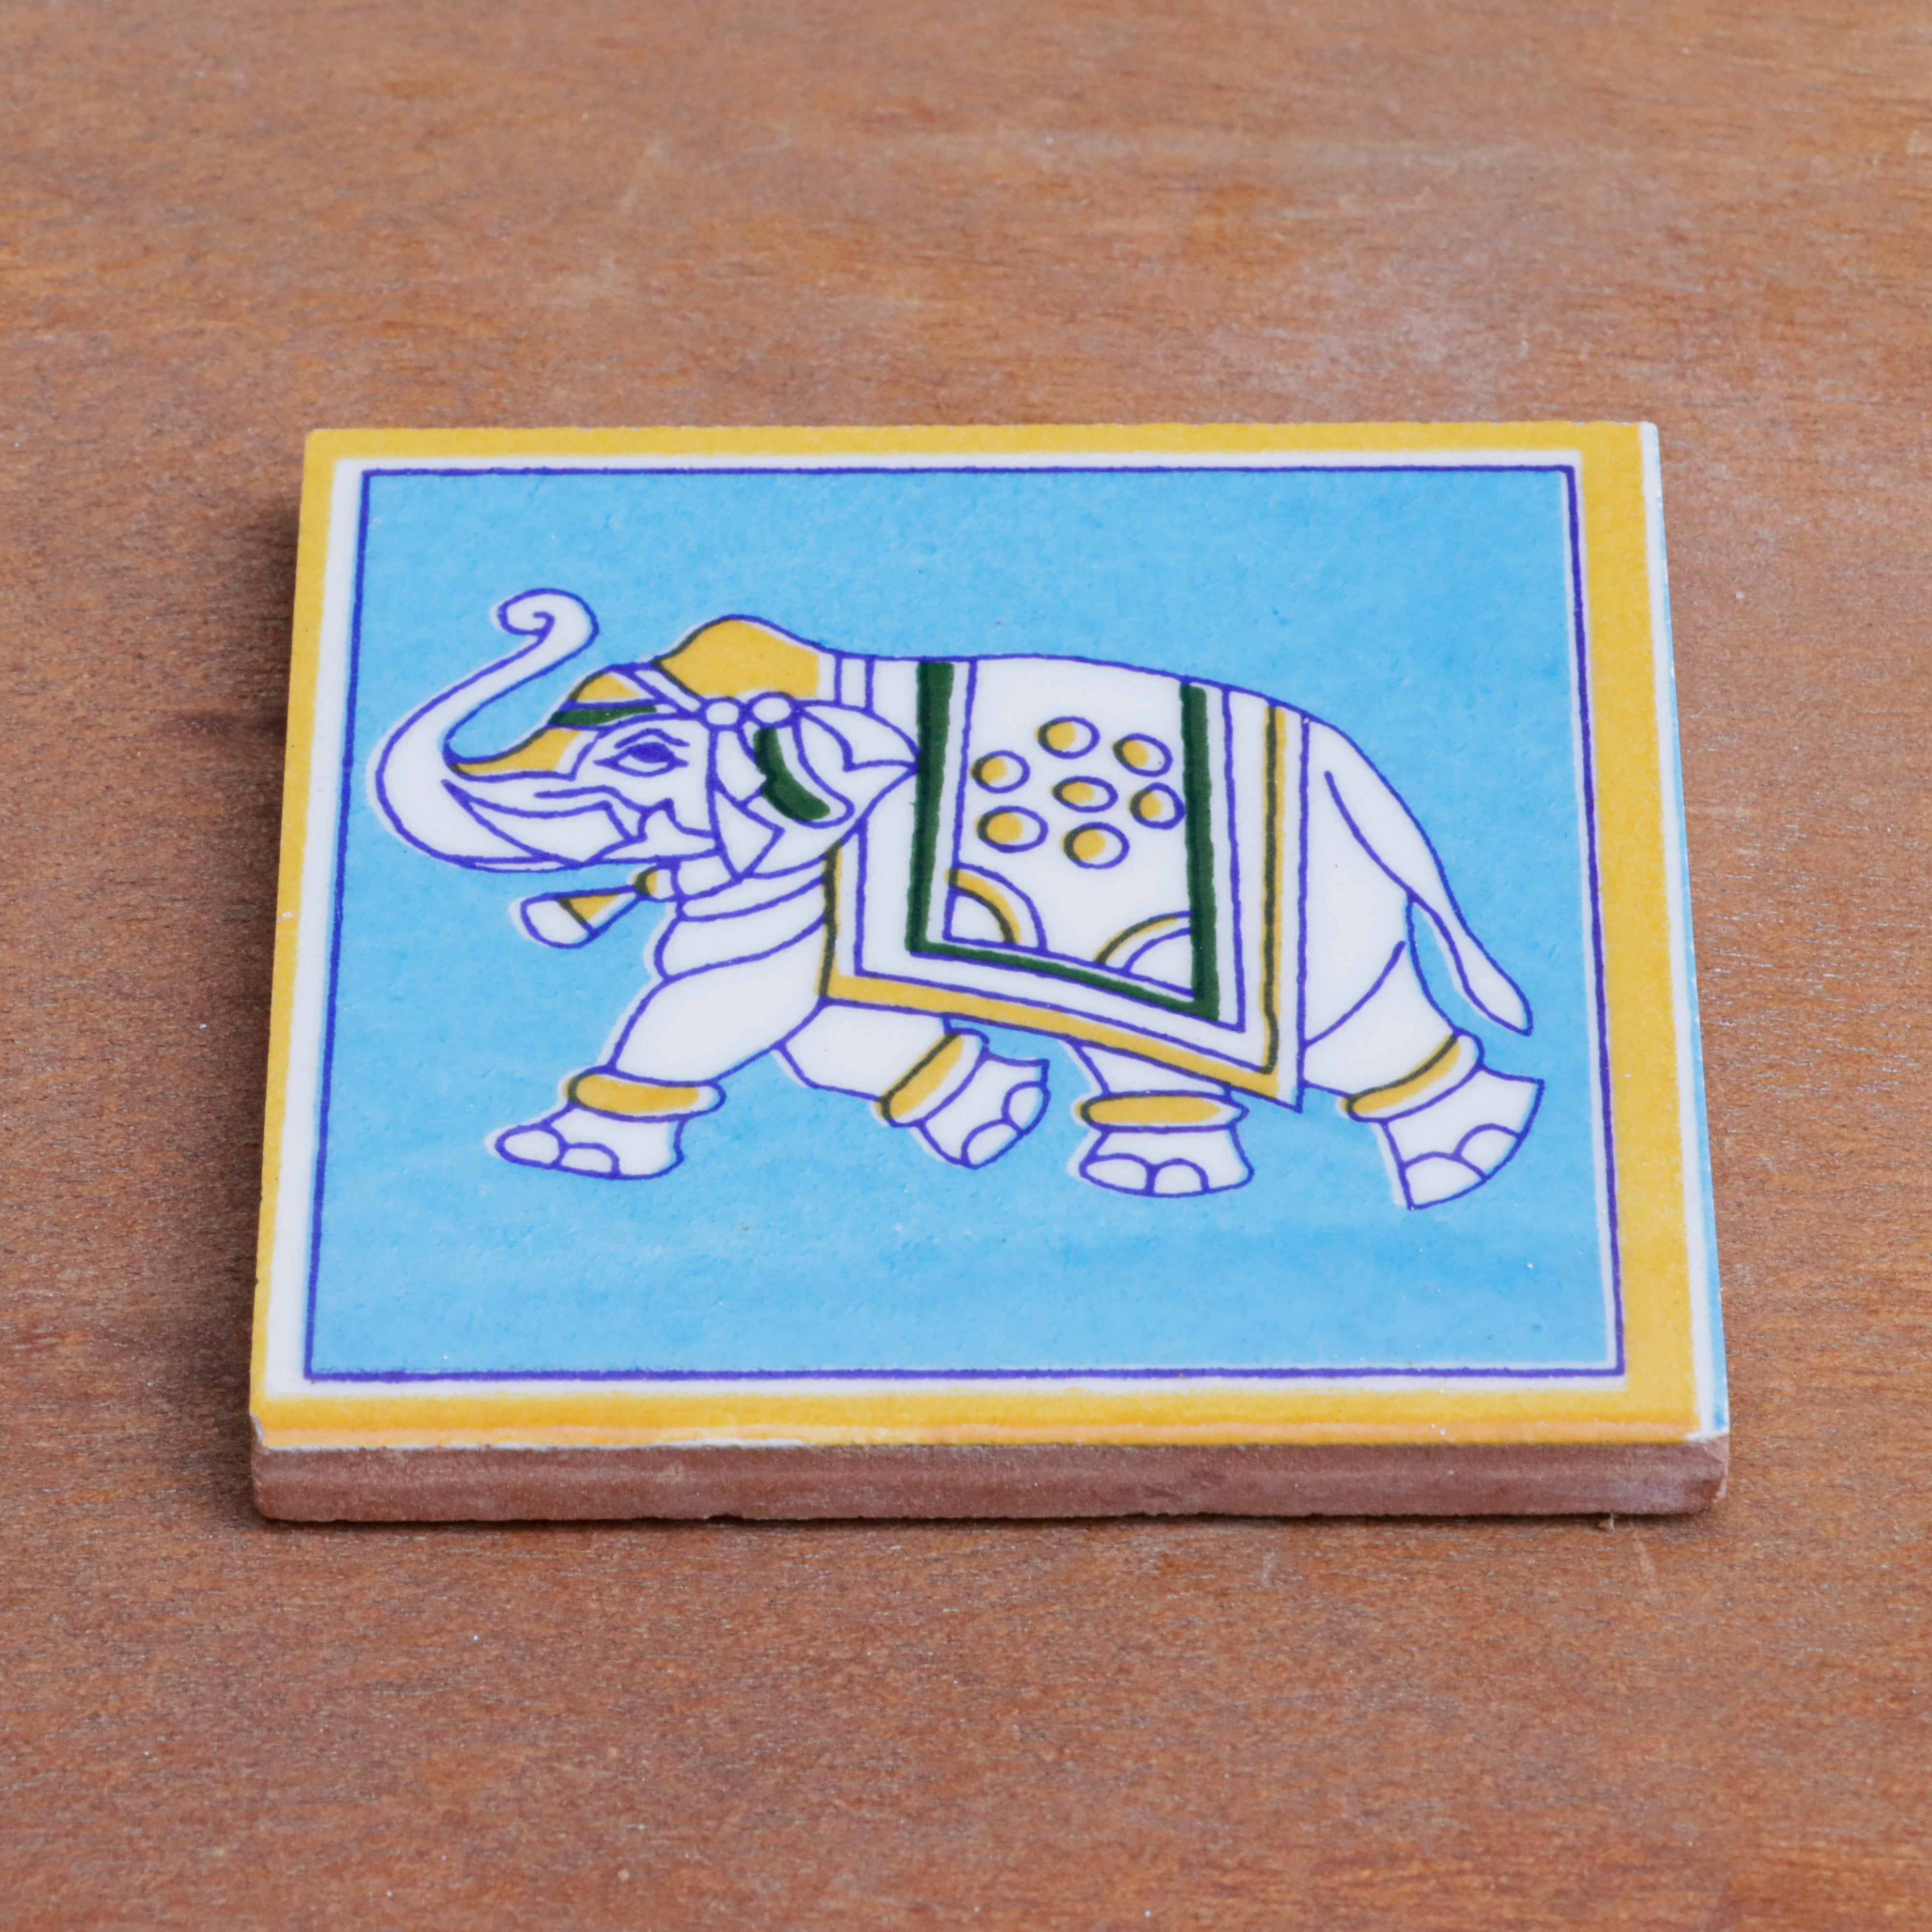 Vintage Royal Style Elephant Designed Ceramic Square Tile Set of 2 Ceramic Tile